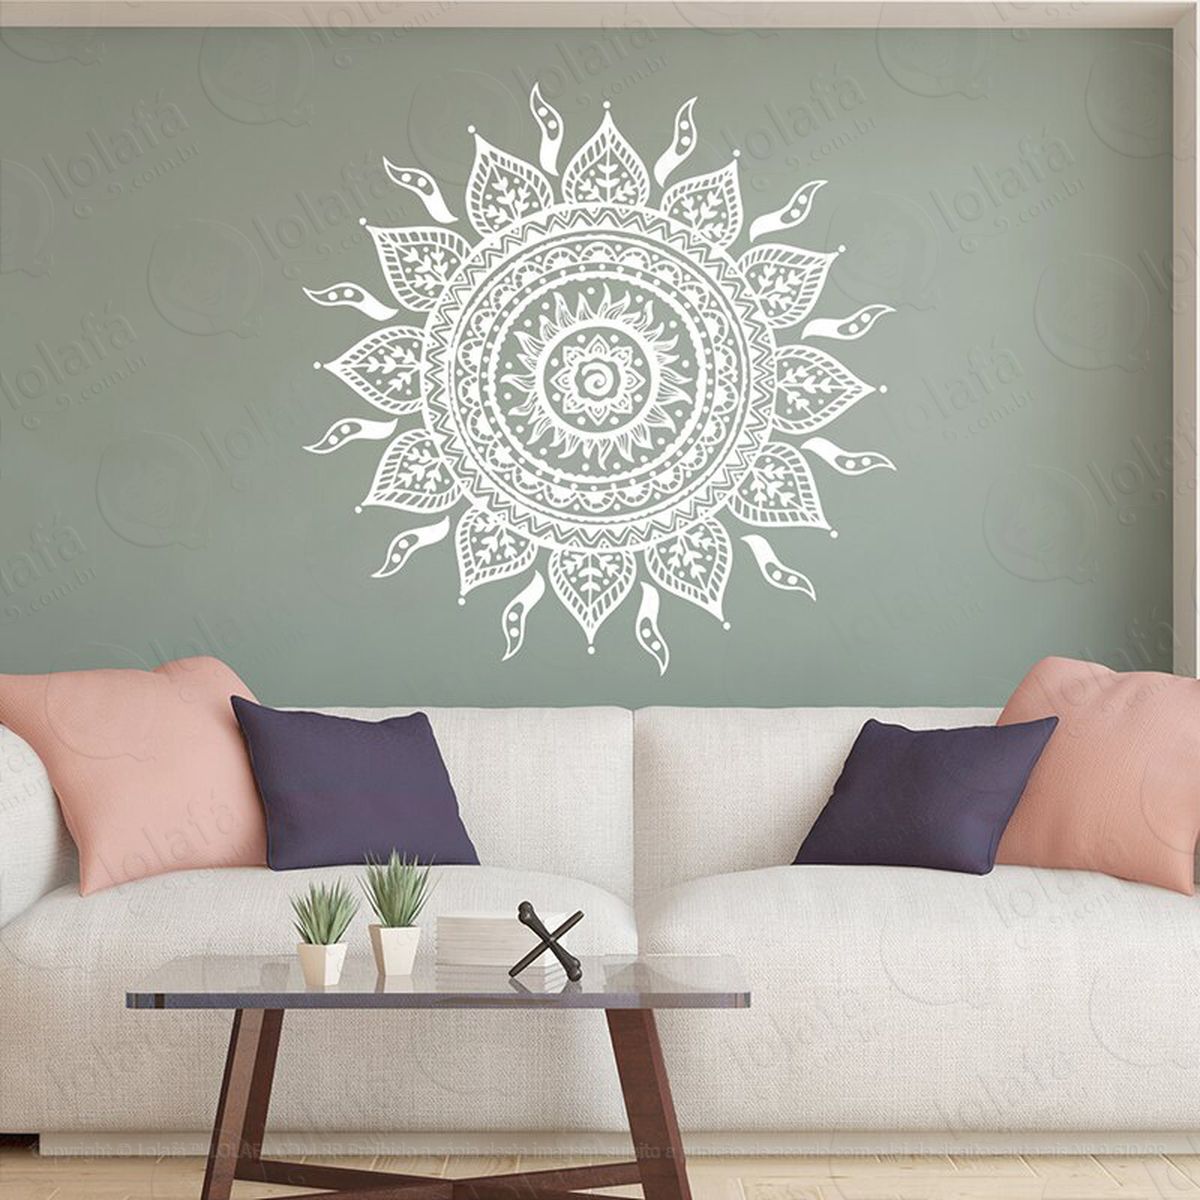 mandala da energia astral adesivo de parede decorativo para casa, quarto, sala e vidro - mod:261